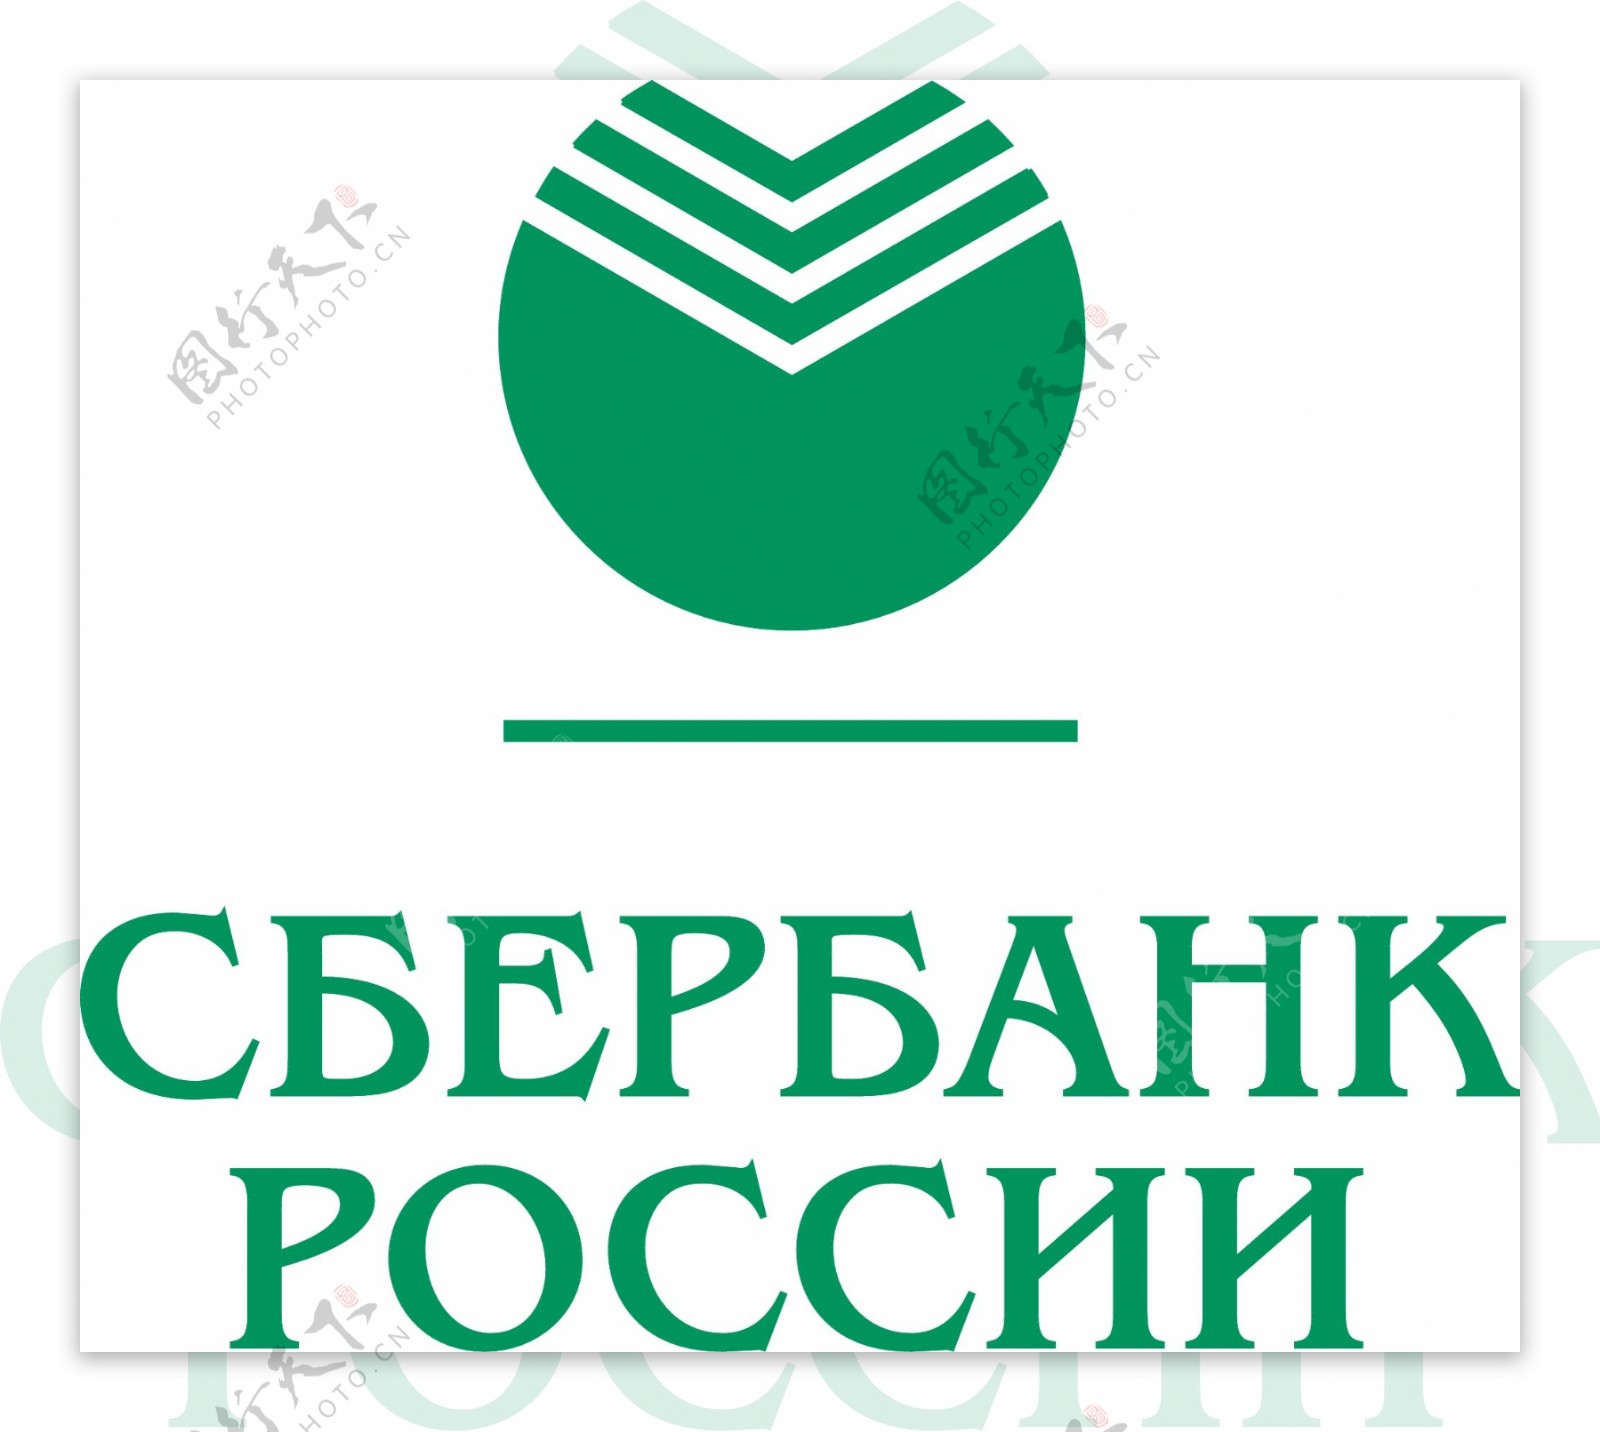 俄罗斯联邦储蓄银行的标志